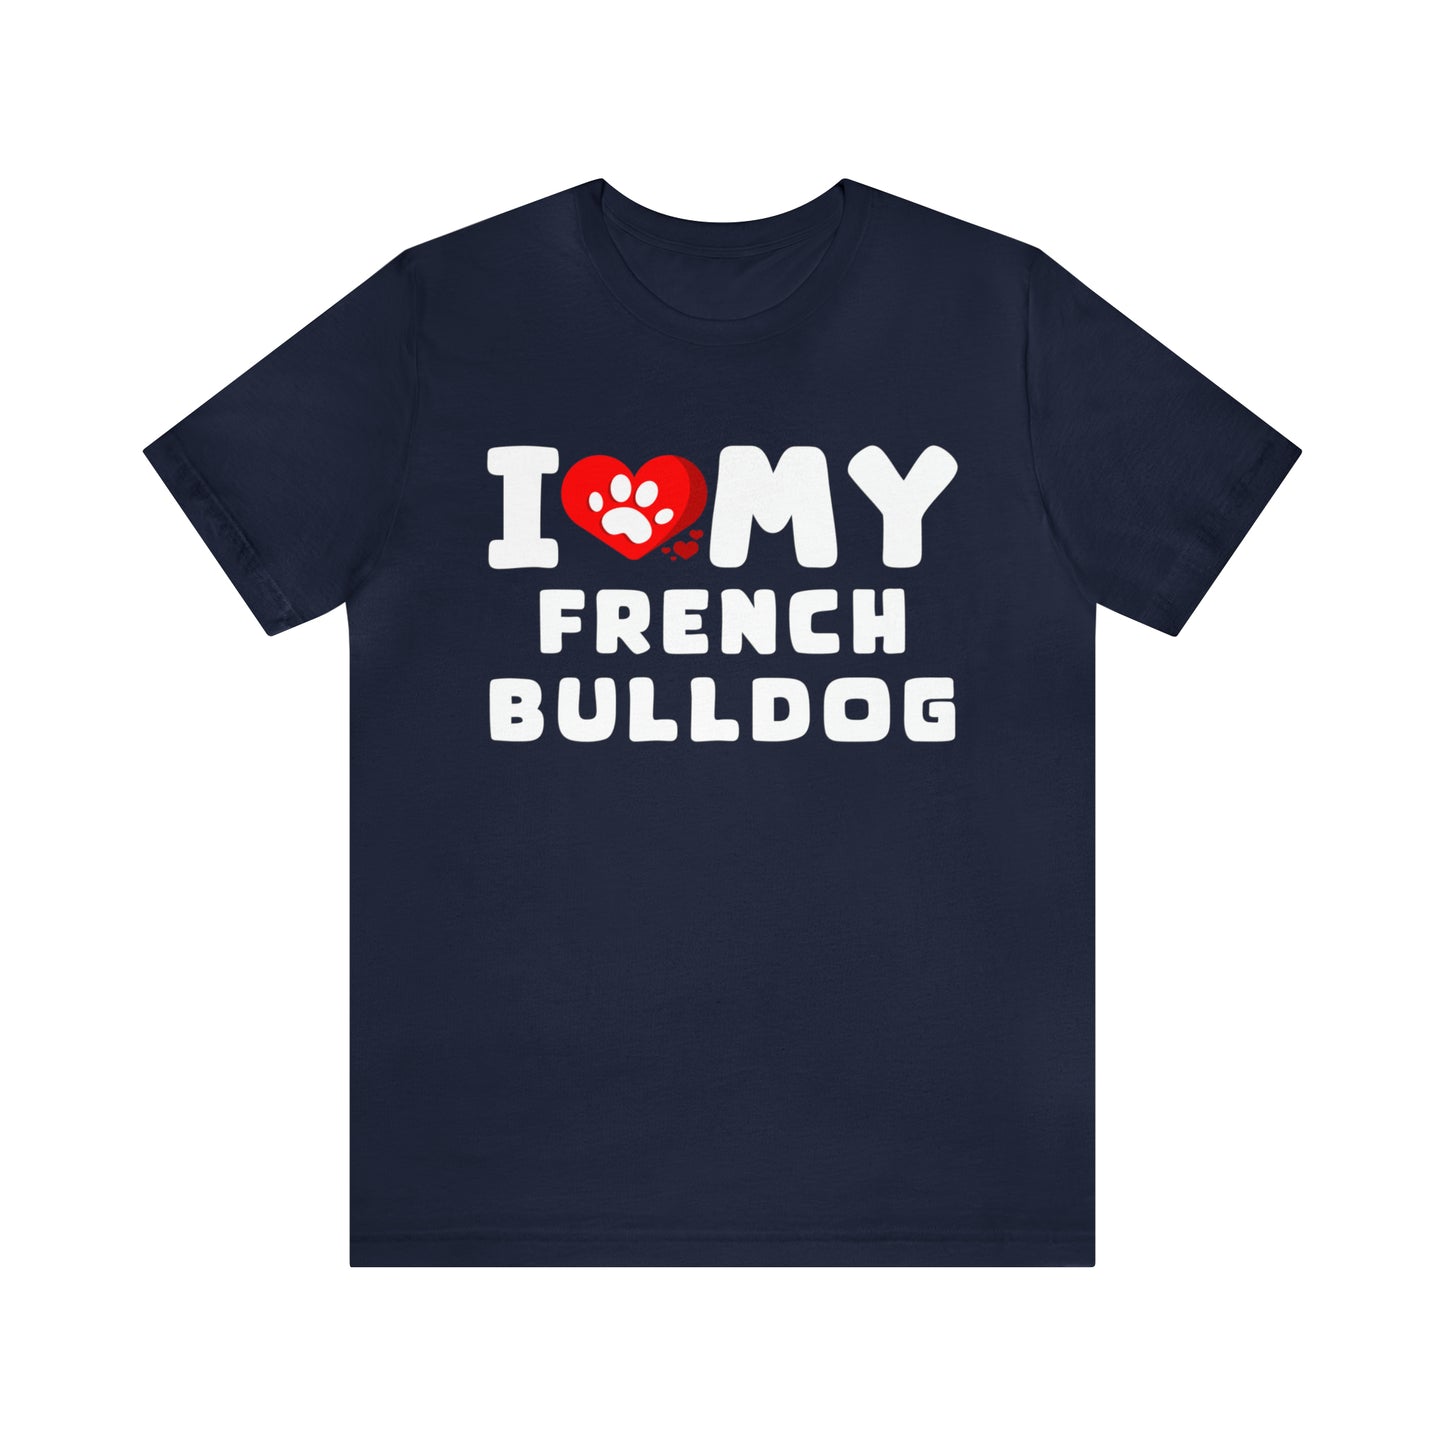 I Love My French Bulldog Gift Shirt for Men or Women, Dog Lover gift t-shirt